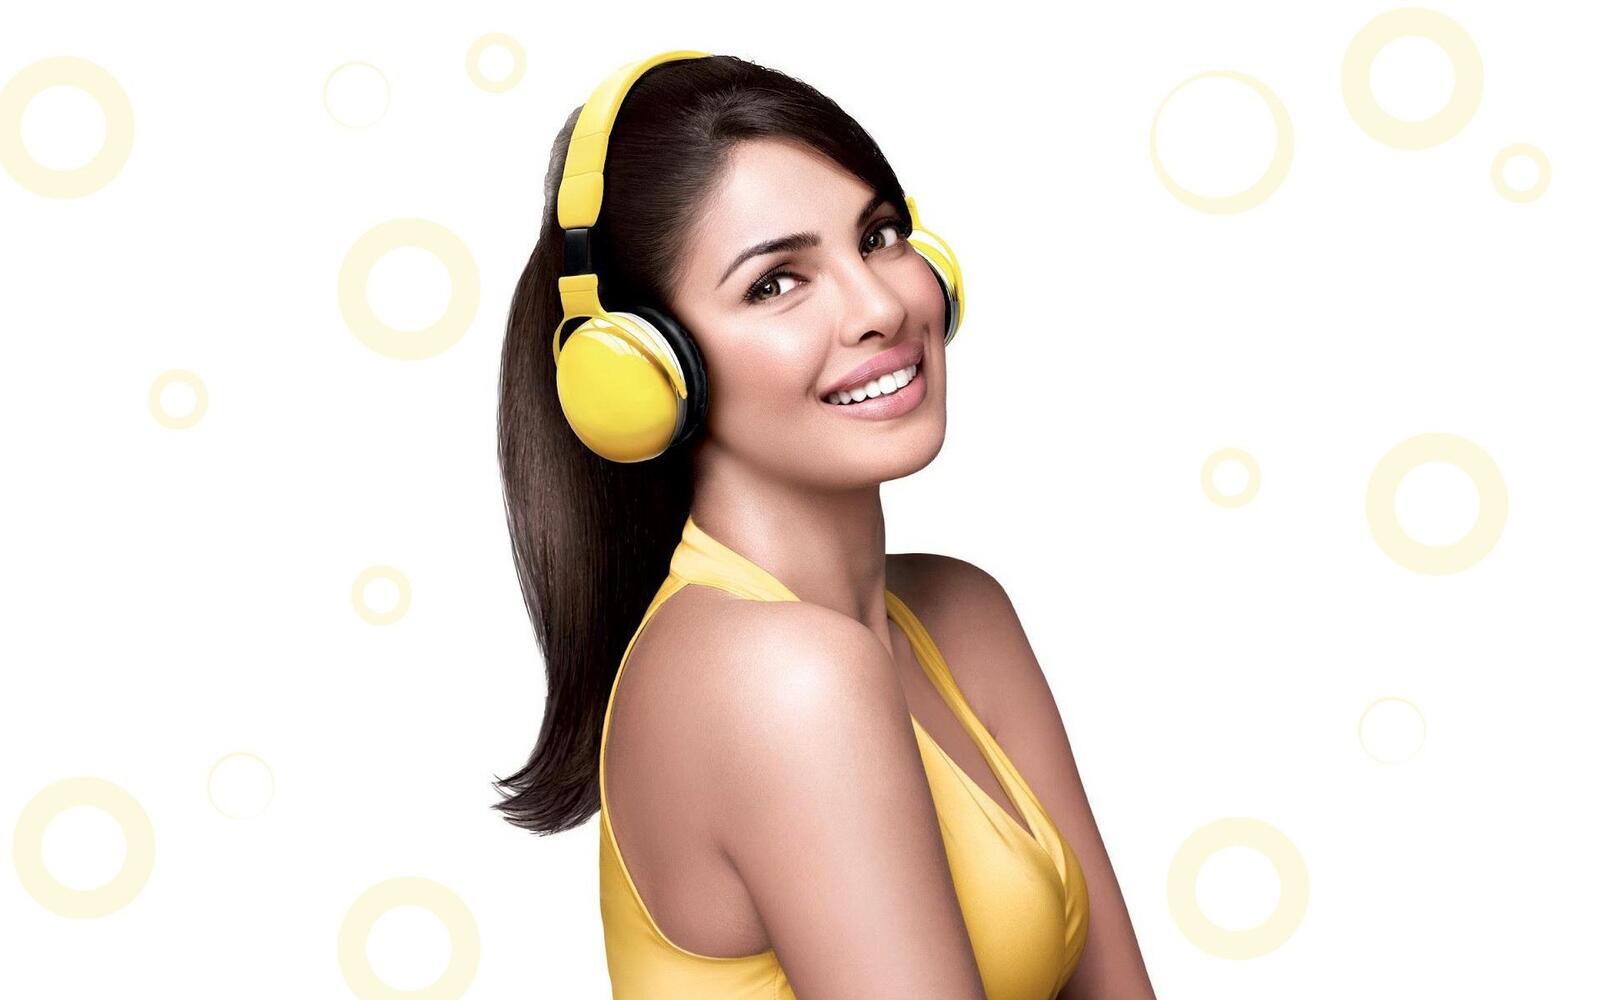 Wallpapers Priyanka Chopra headphones indian celebrities on the desktop